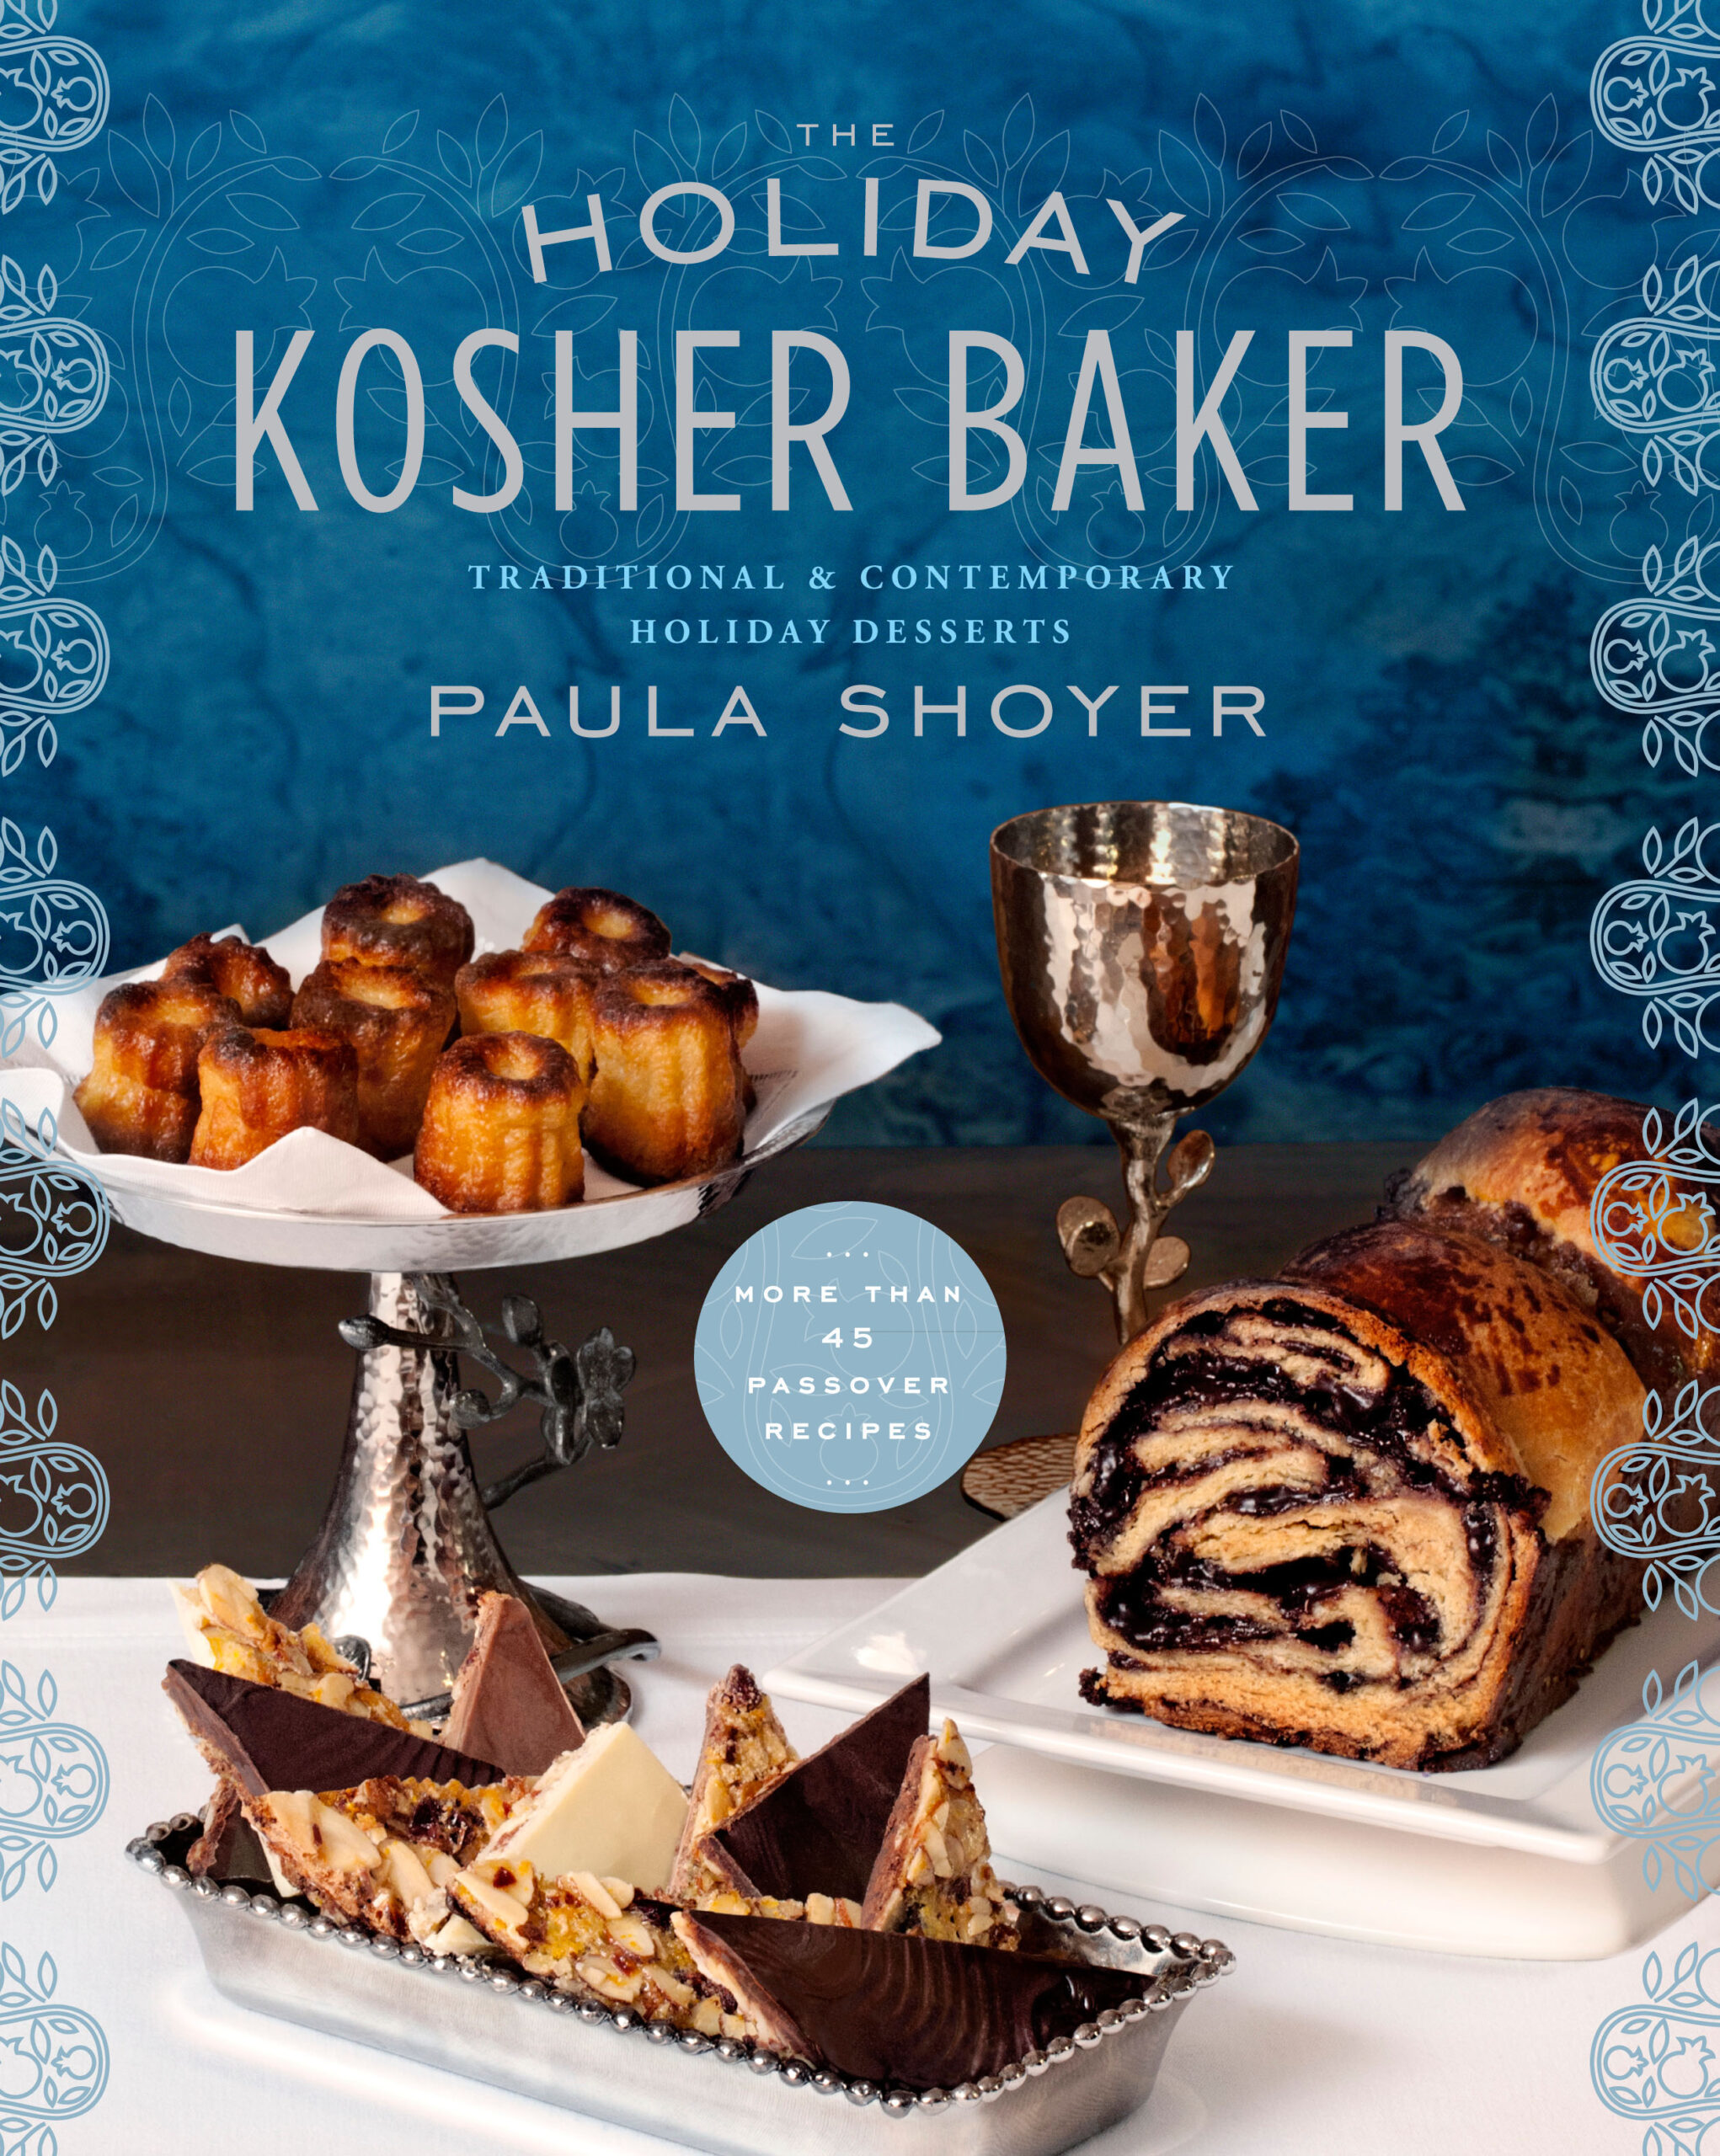 The Holiday Kosher Baker Cookbook